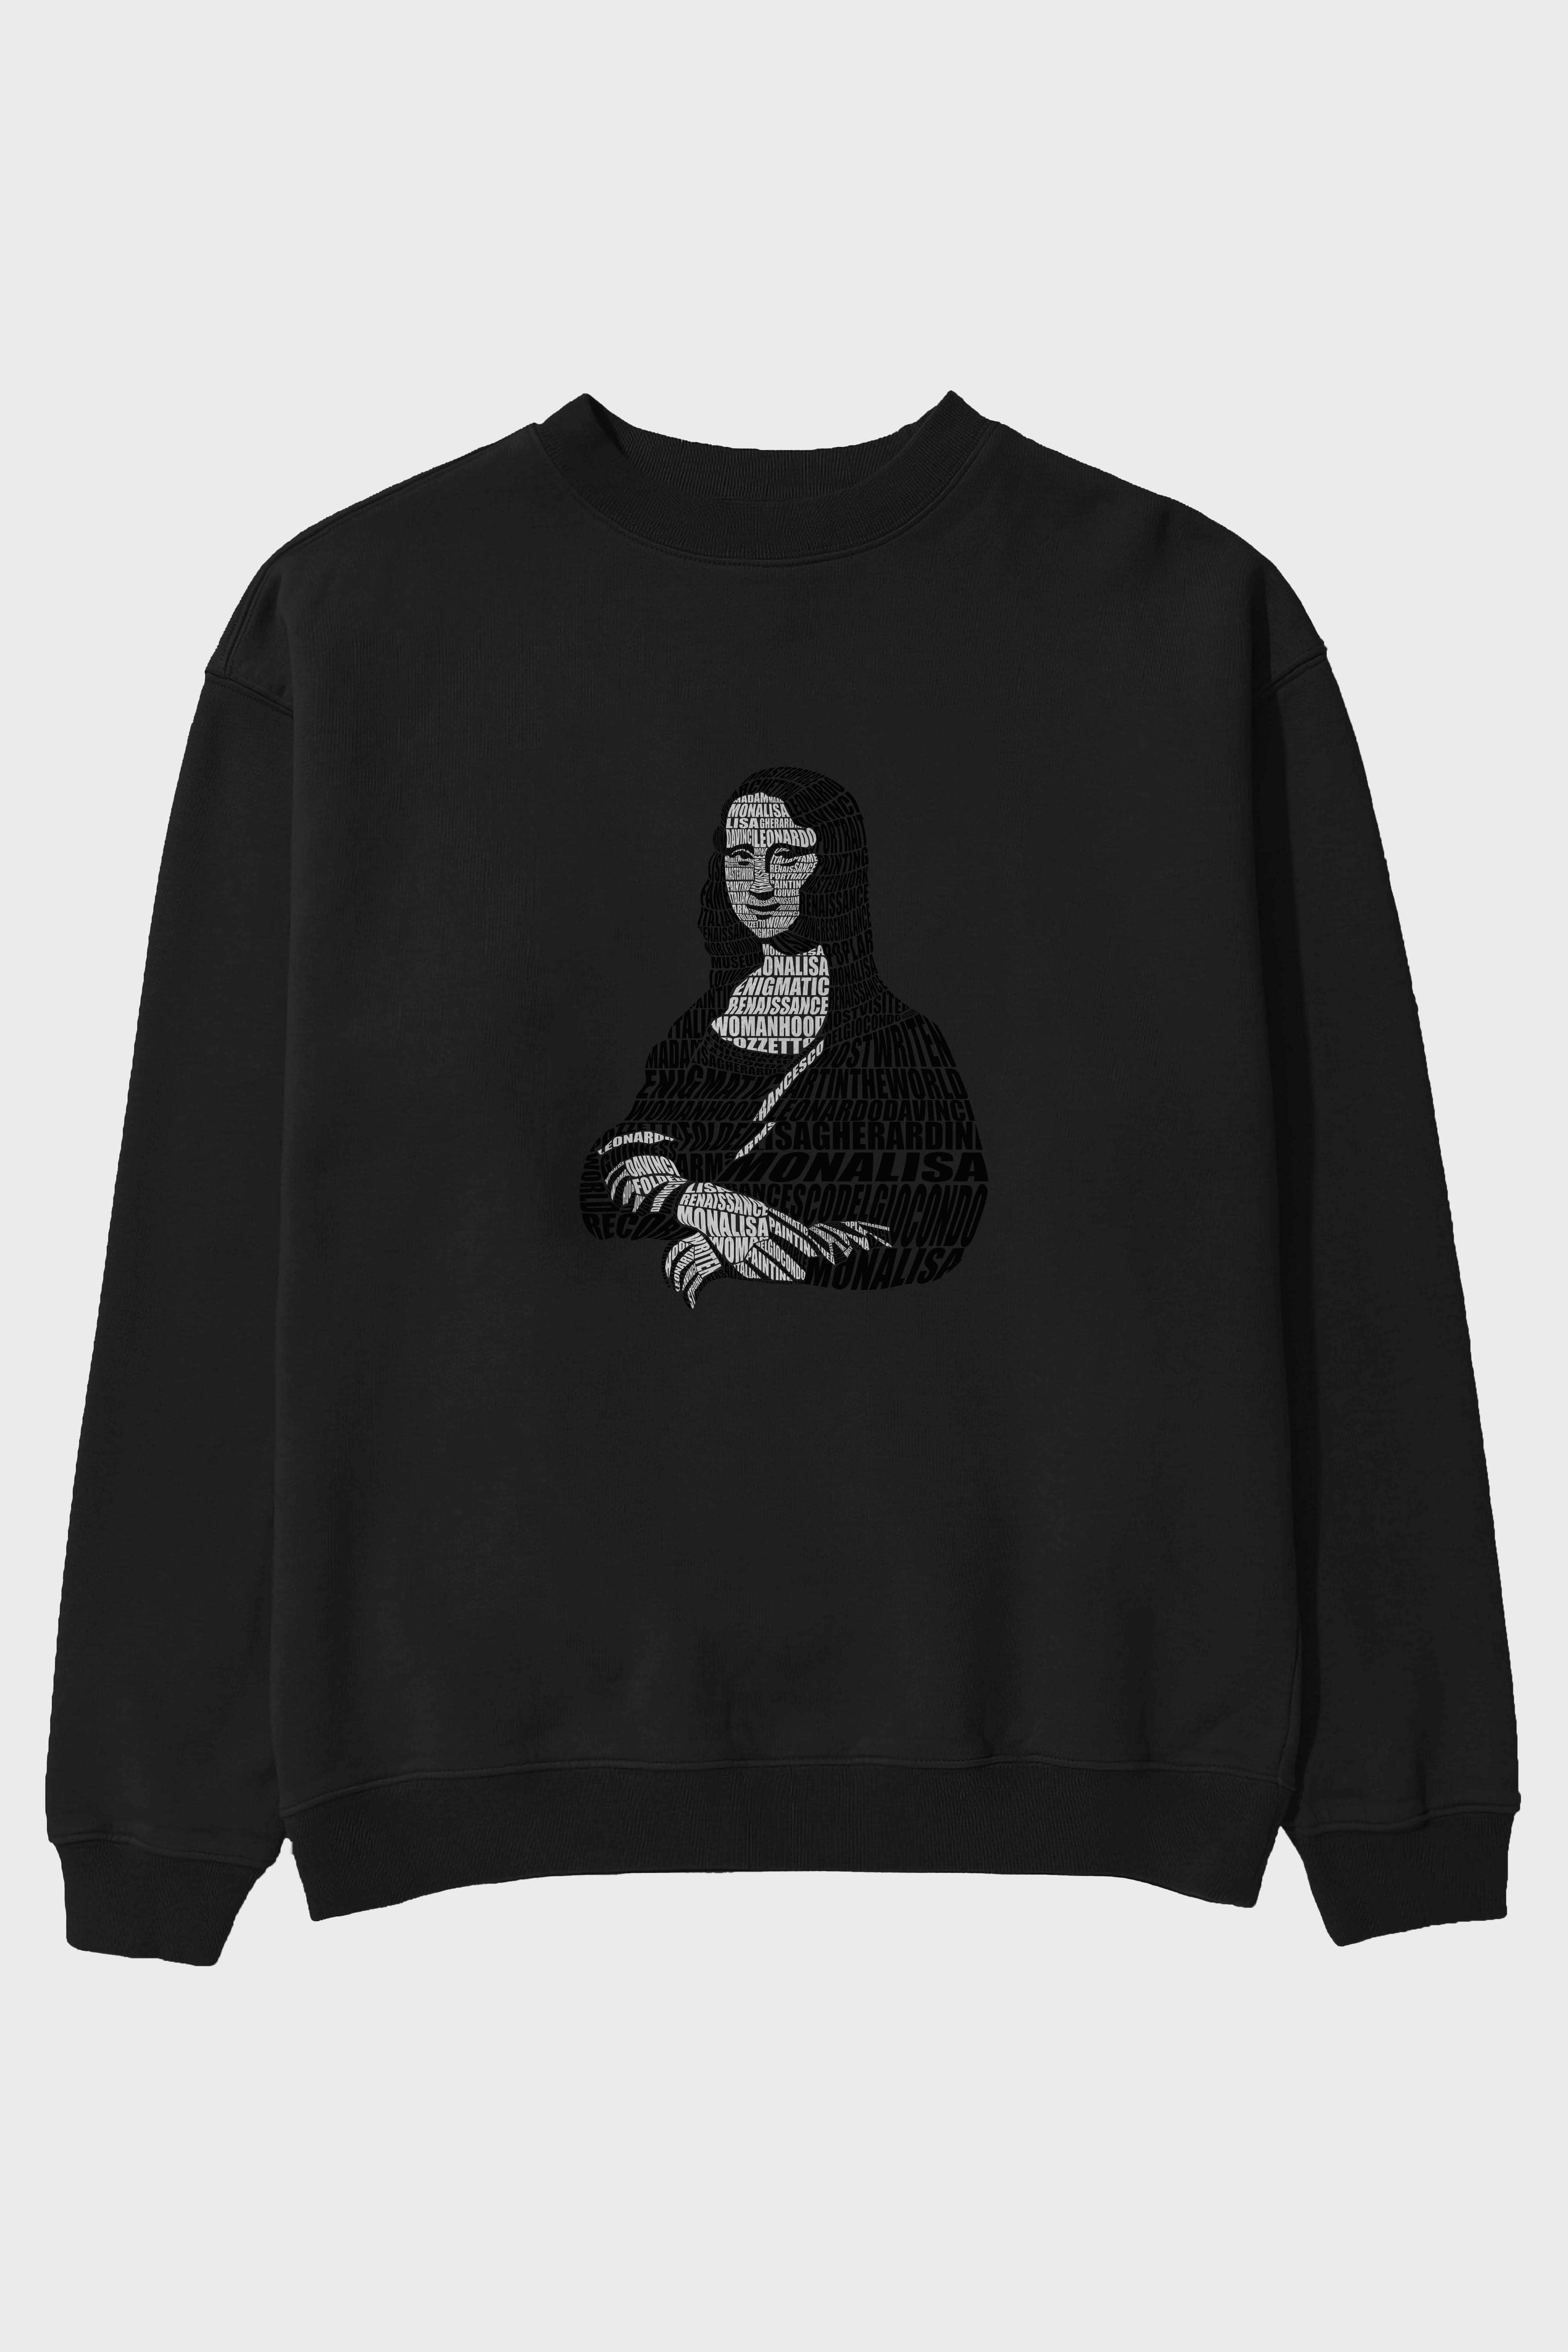 Mona Lisa Calligram Ön Baskılı Oversize Sweatshirt Erkek Kadın Unisex